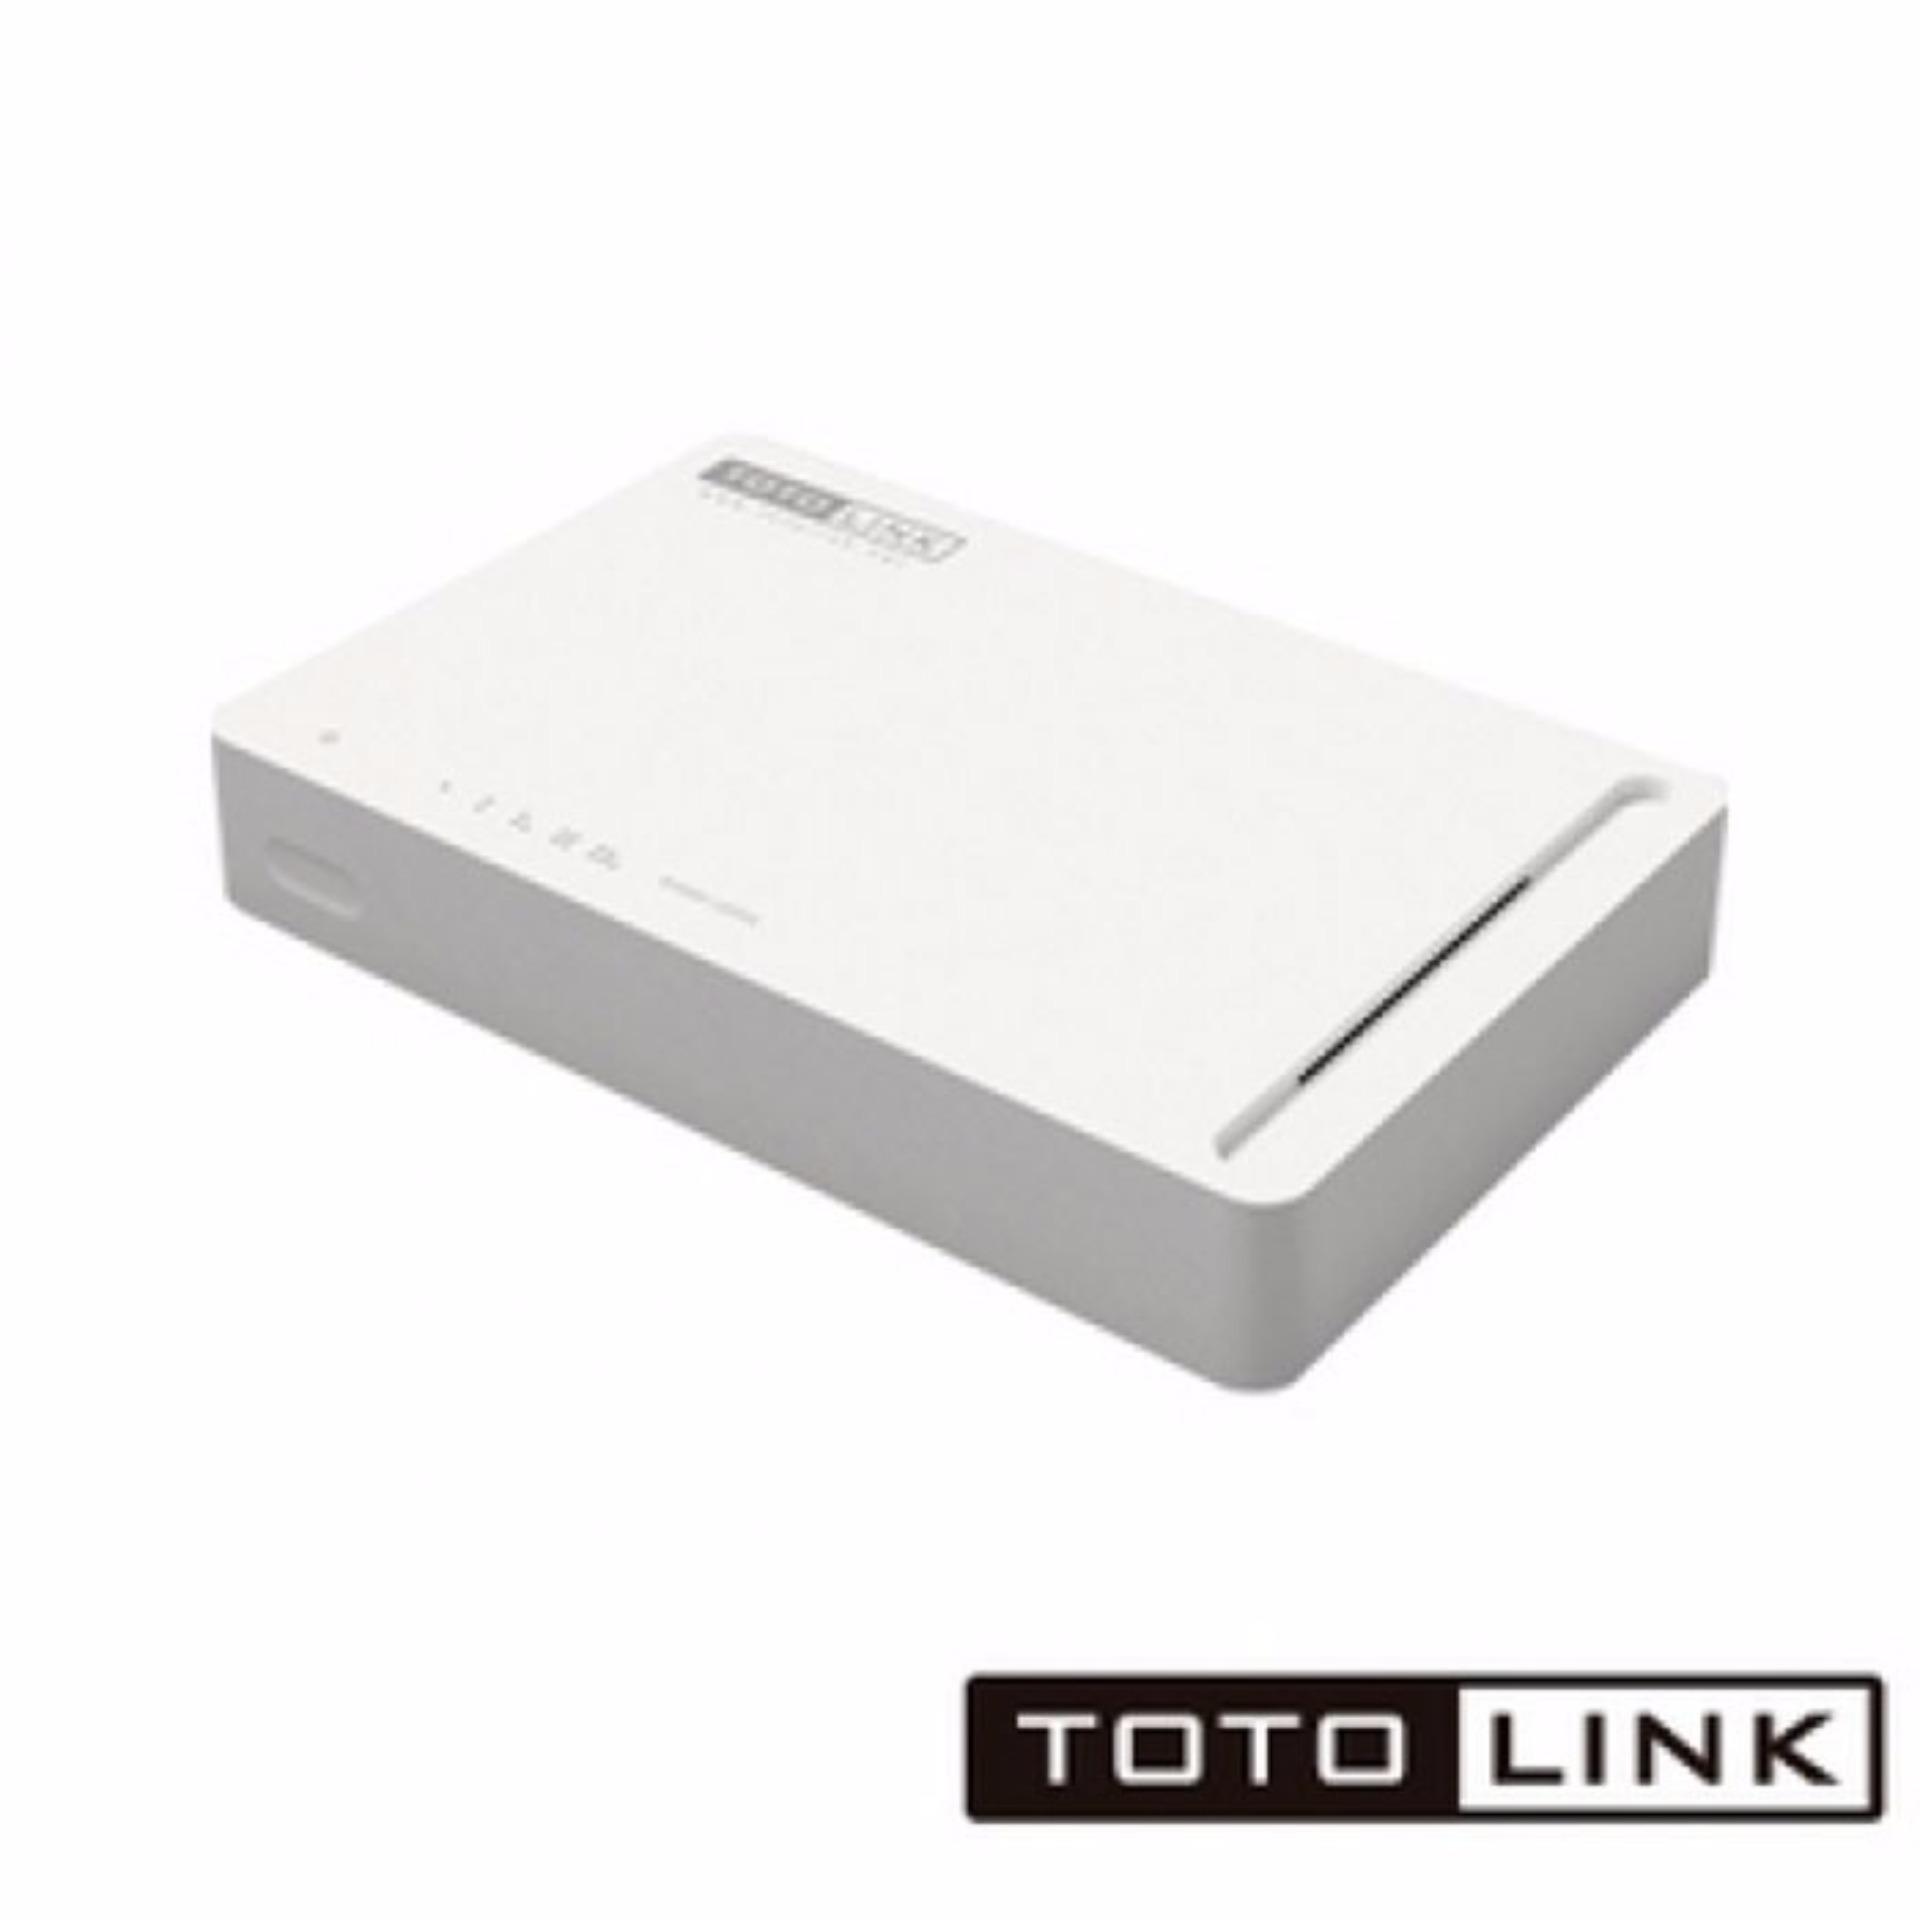 [Giảm 8% cho đơn từ 49K] Switch 5 port 100Mbps TOTOLINK S505 - Hãng phân phối chính thức